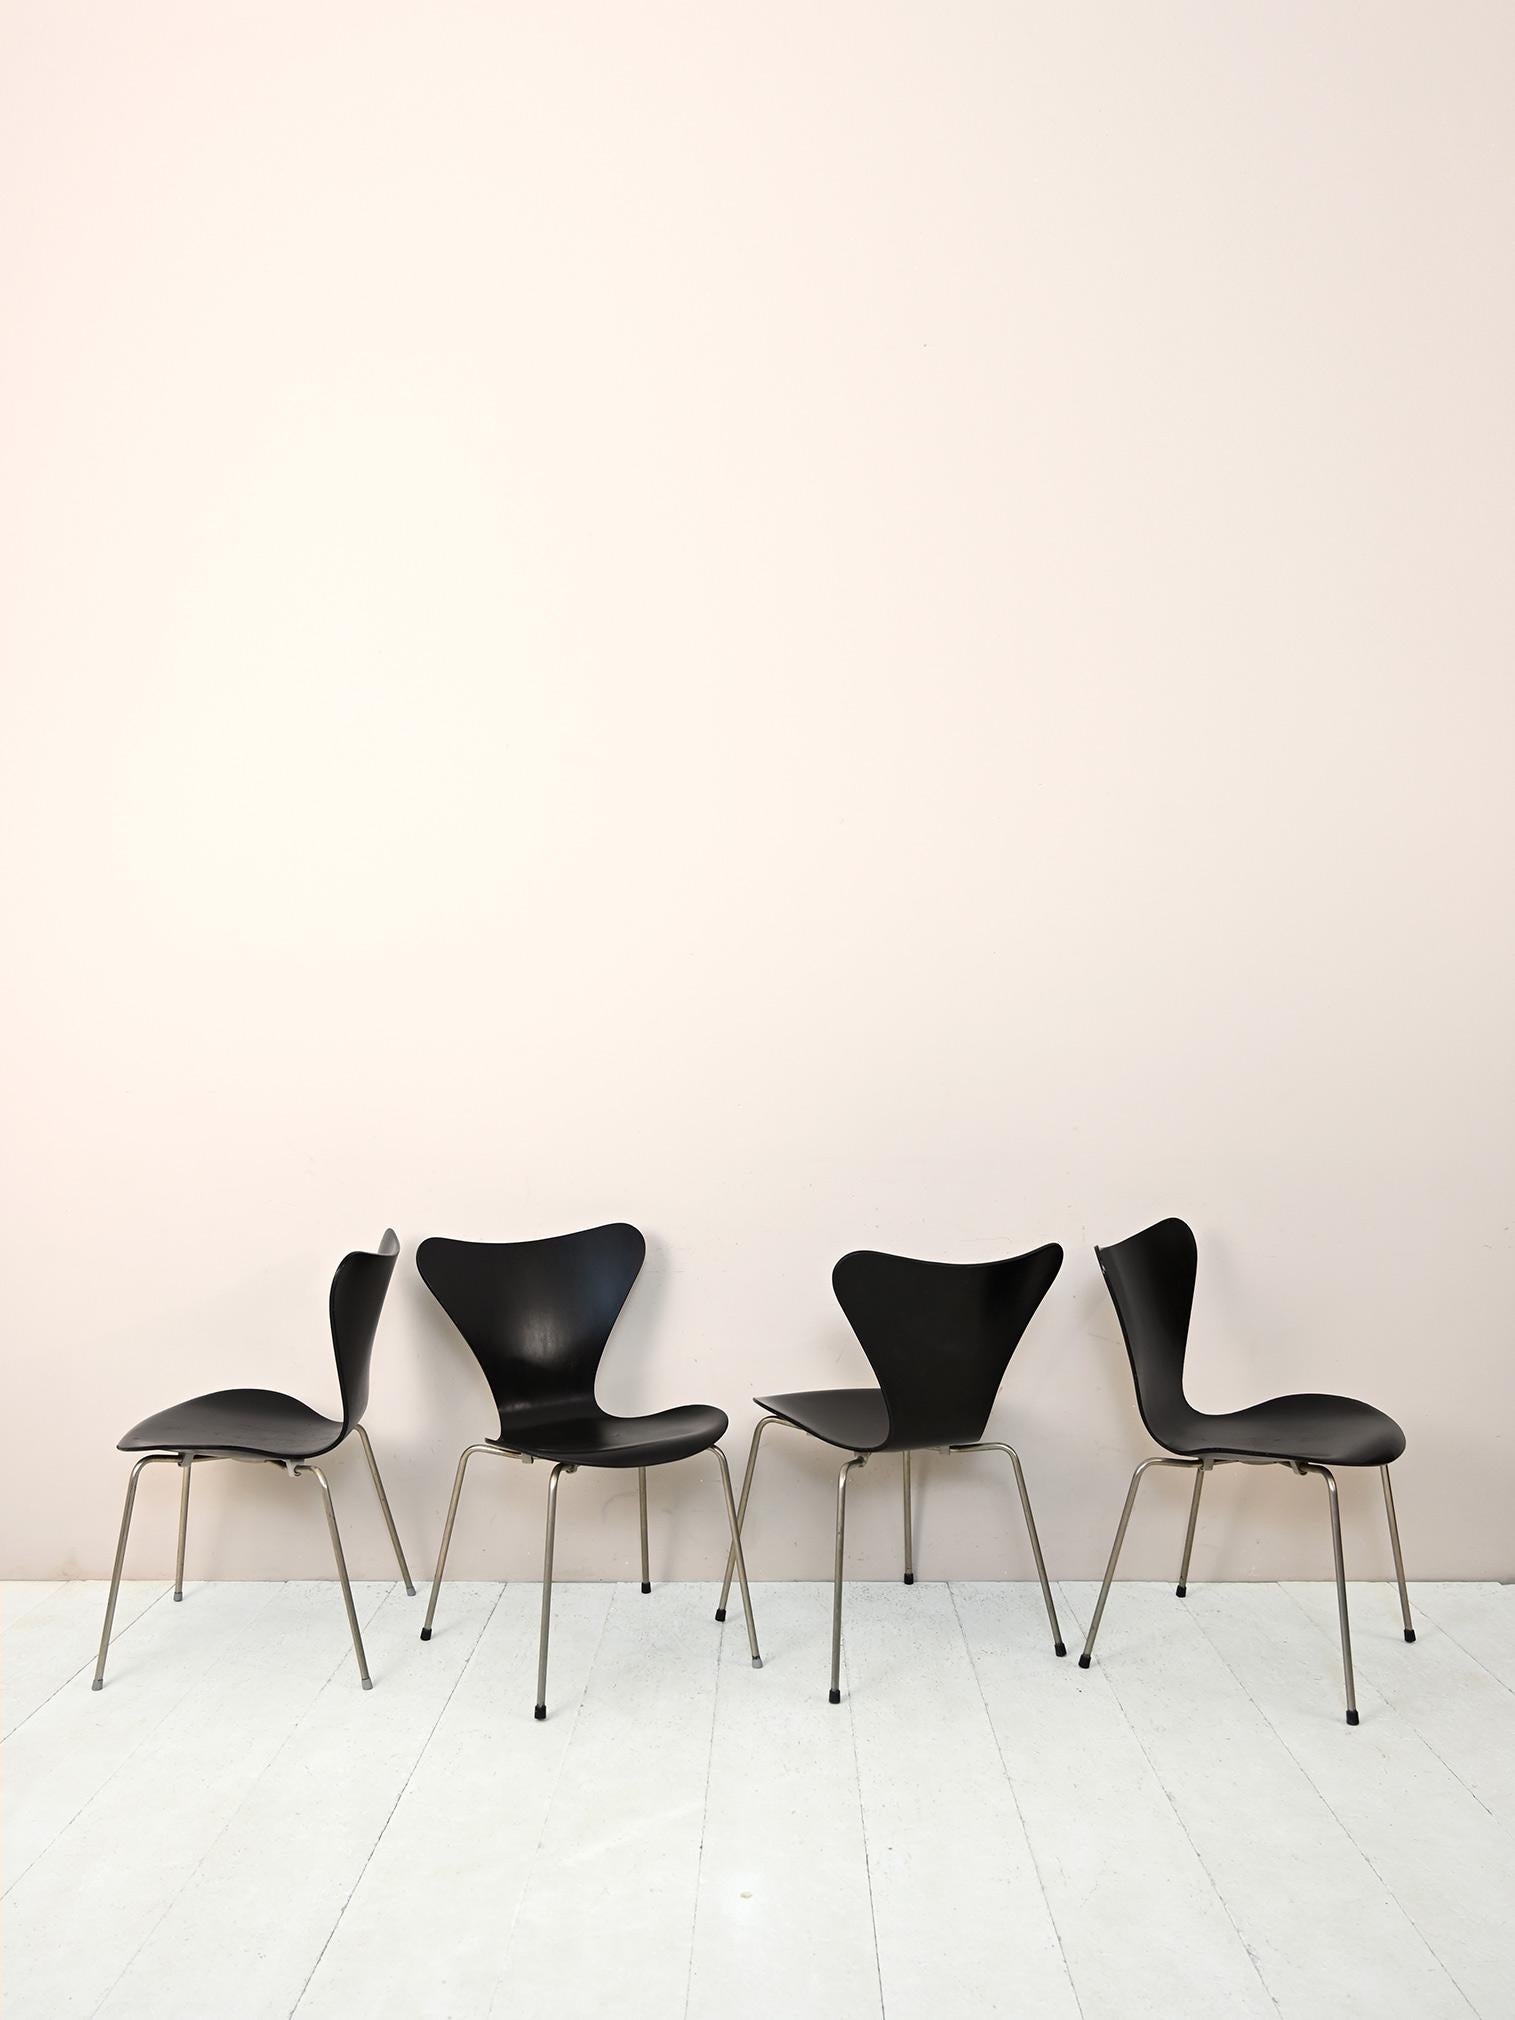 4 ikonische Stühle des Designers Arne Jacobsen.

Der Stuhl 3107, bekannt als Serie 7, ist Teil einer Designlegende, ein zeitloser und historischer Stuhl. Inspiriert durch die Arbeit von Charles Eames entwickelte Jacobsen einen leichten,